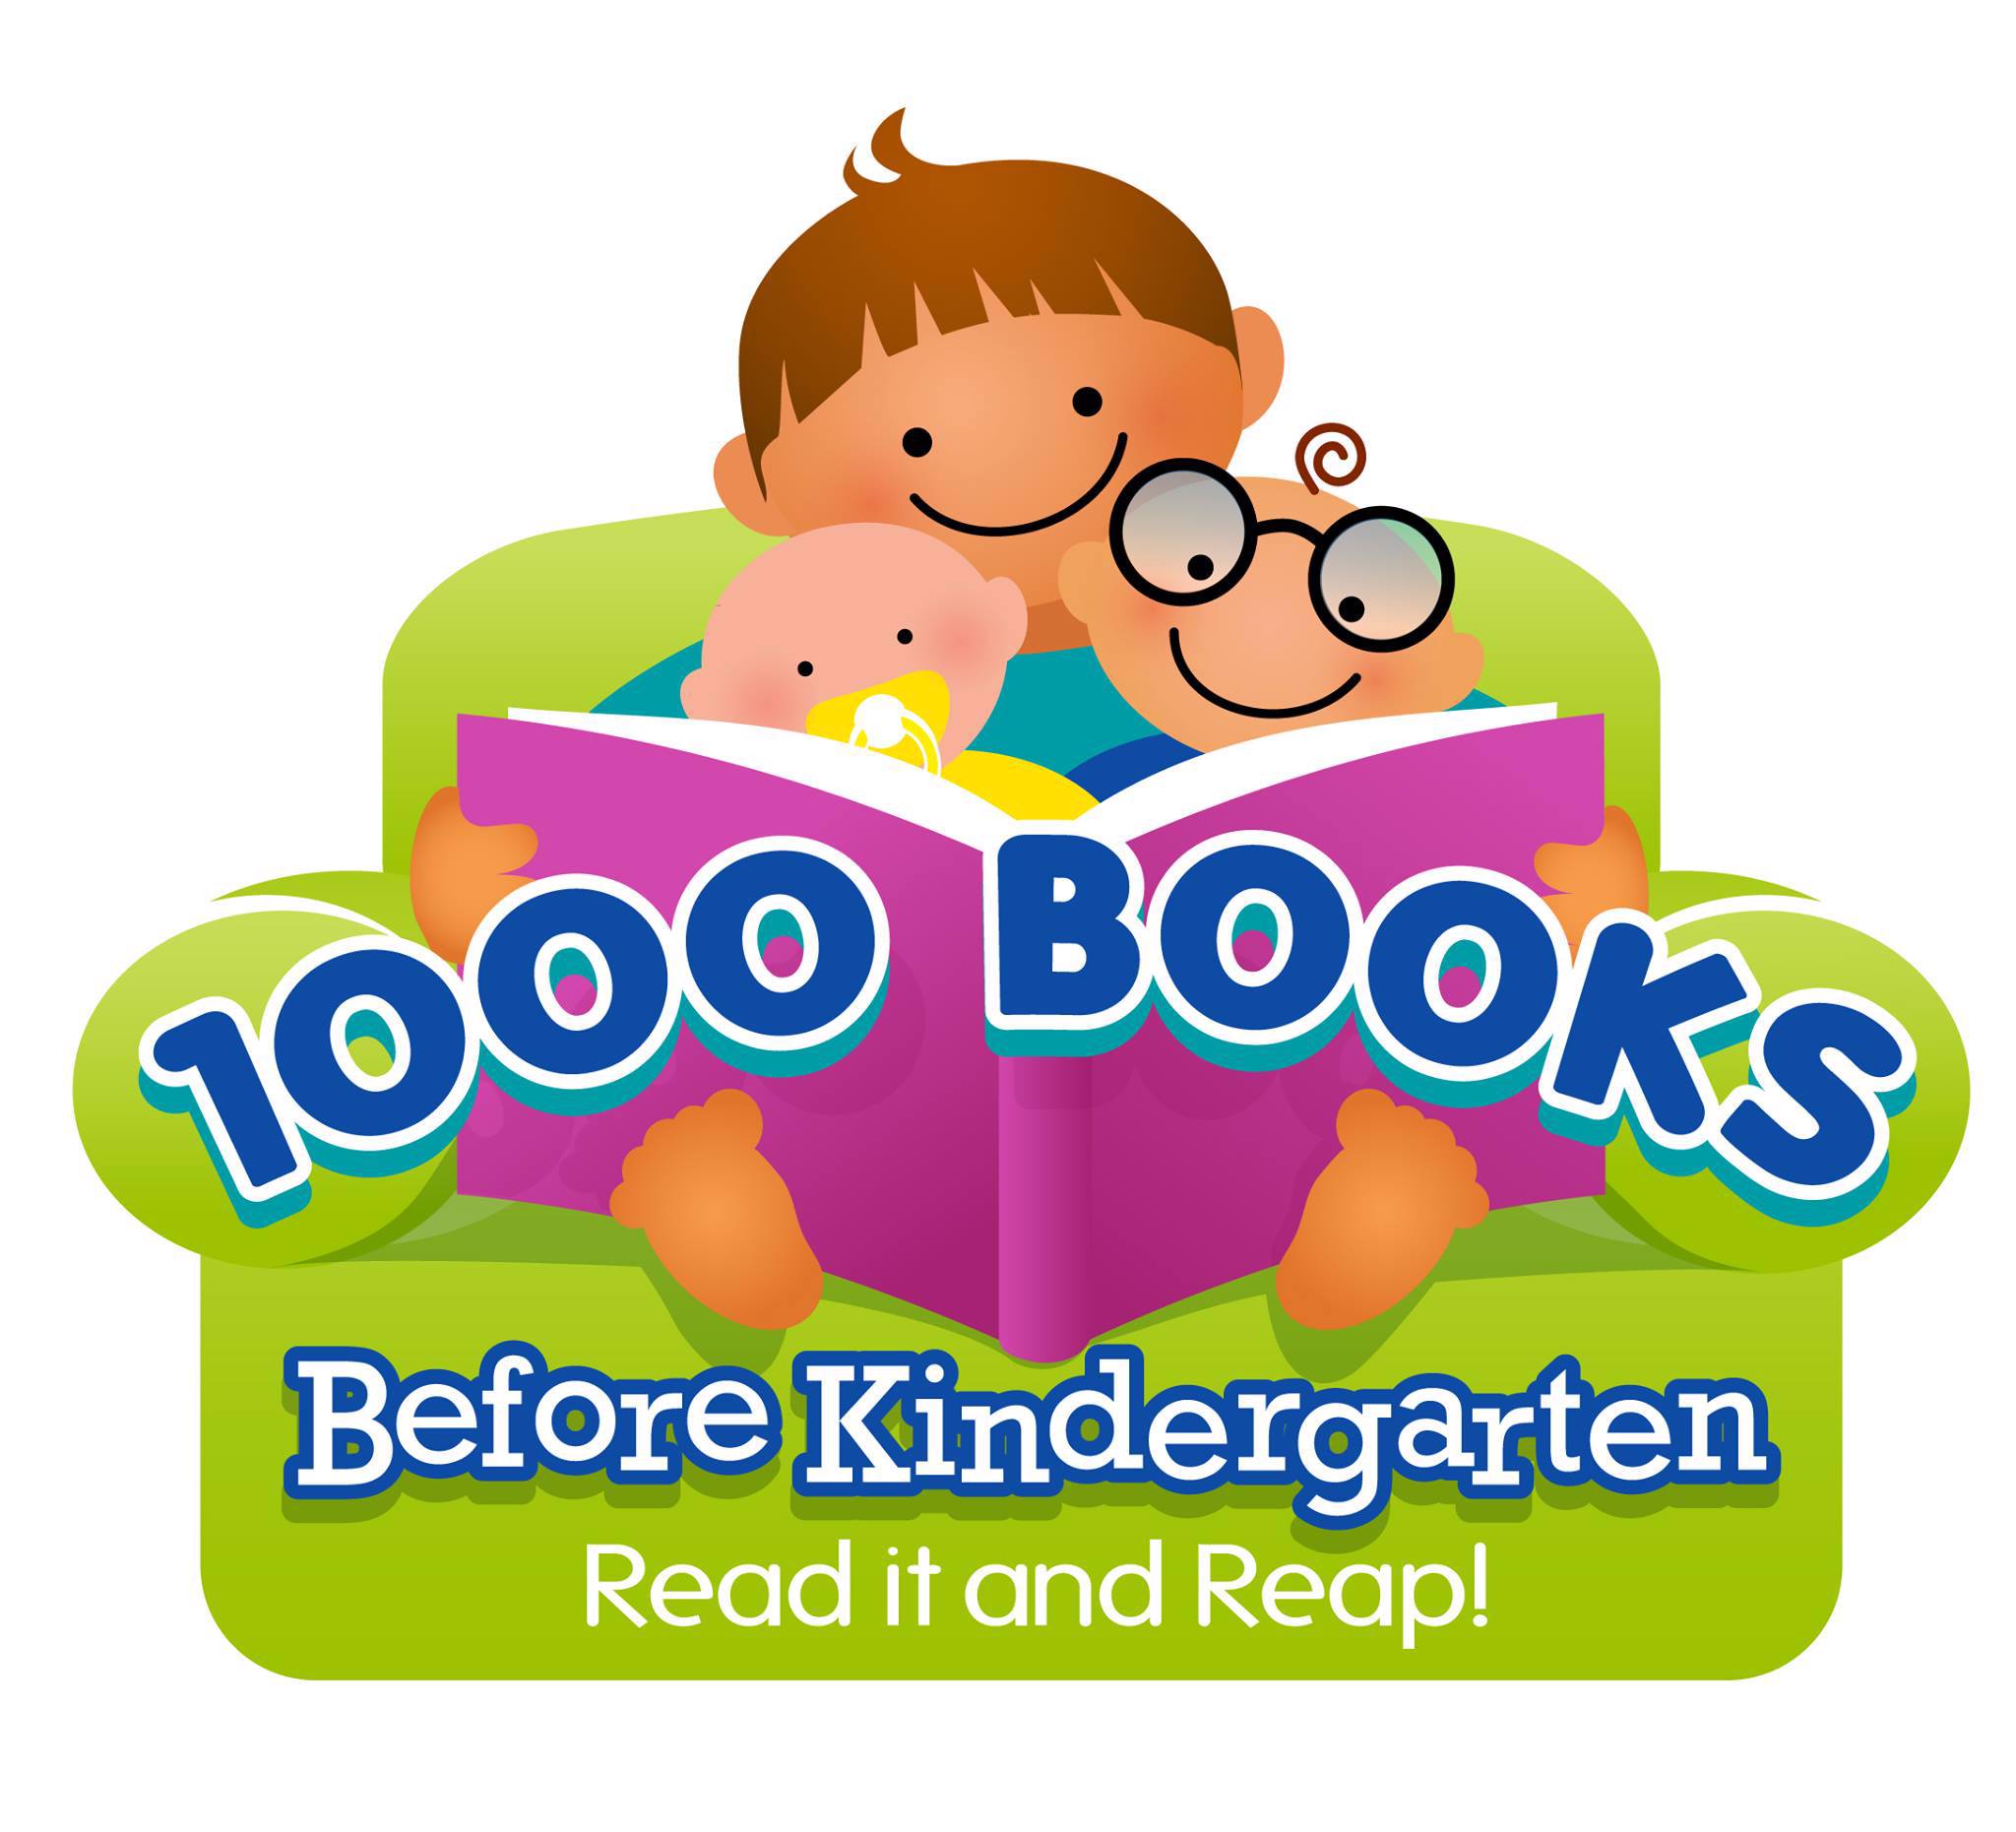 "1000 Books Before Kindergarten" logo